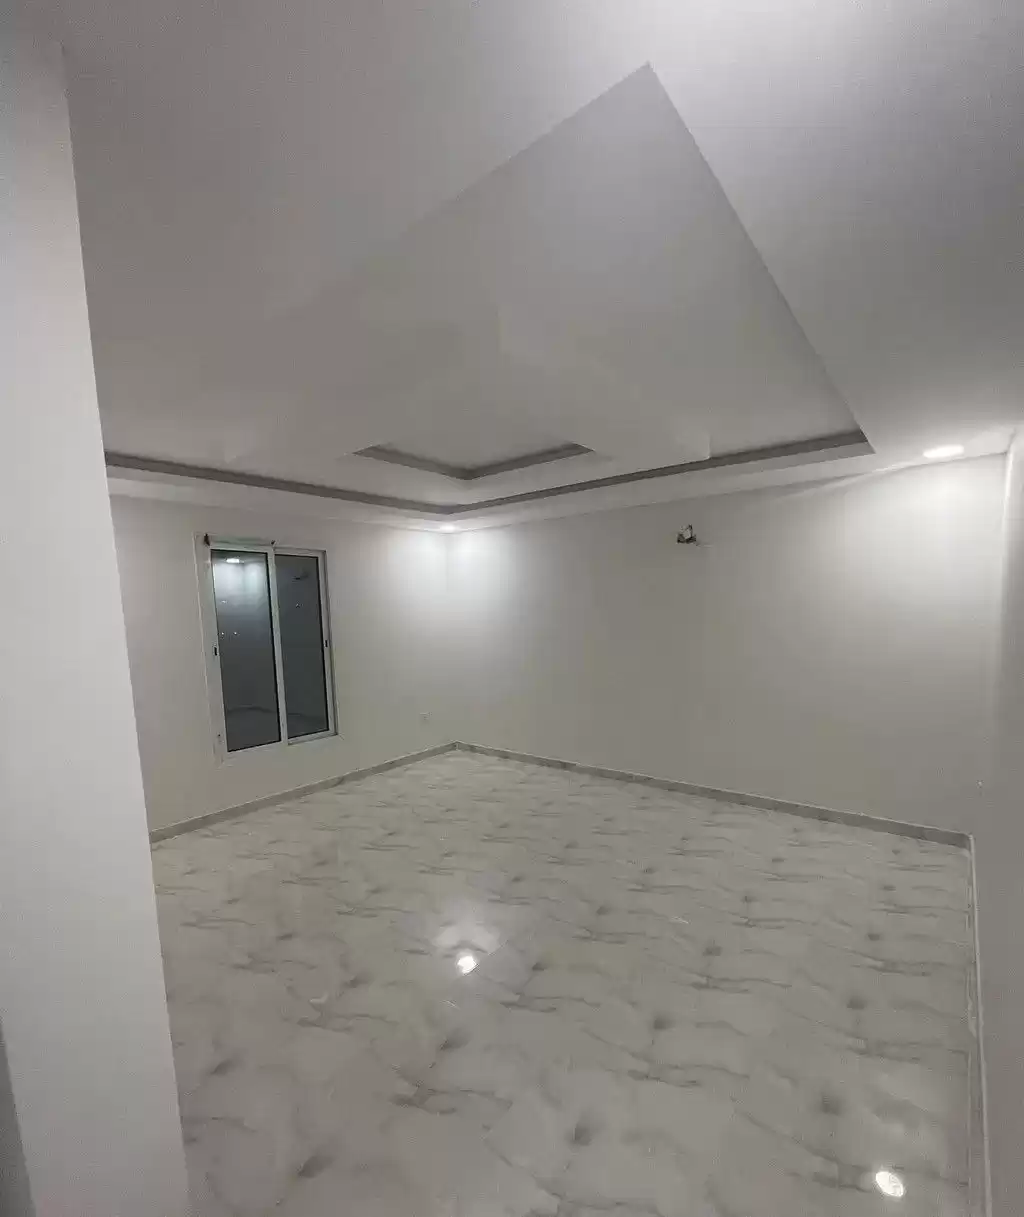 Résidentiel Propriété prête 3 chambres U / f Appartement  a louer au Riyad #23531 - 1  image 